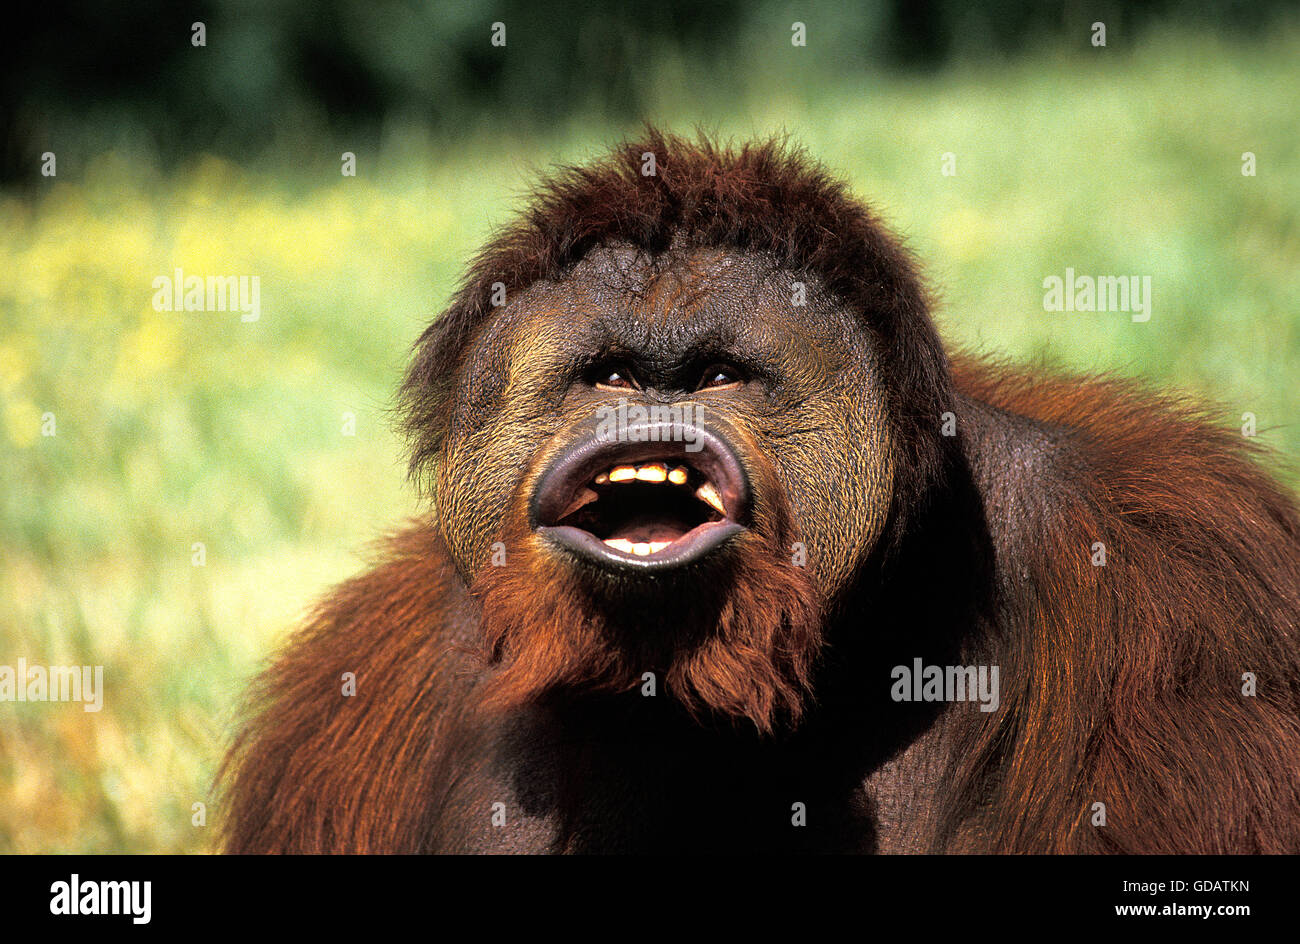 Orang-Utan, Pongo Pygmaeus, männlich mit lustigem Gesicht Stockfoto